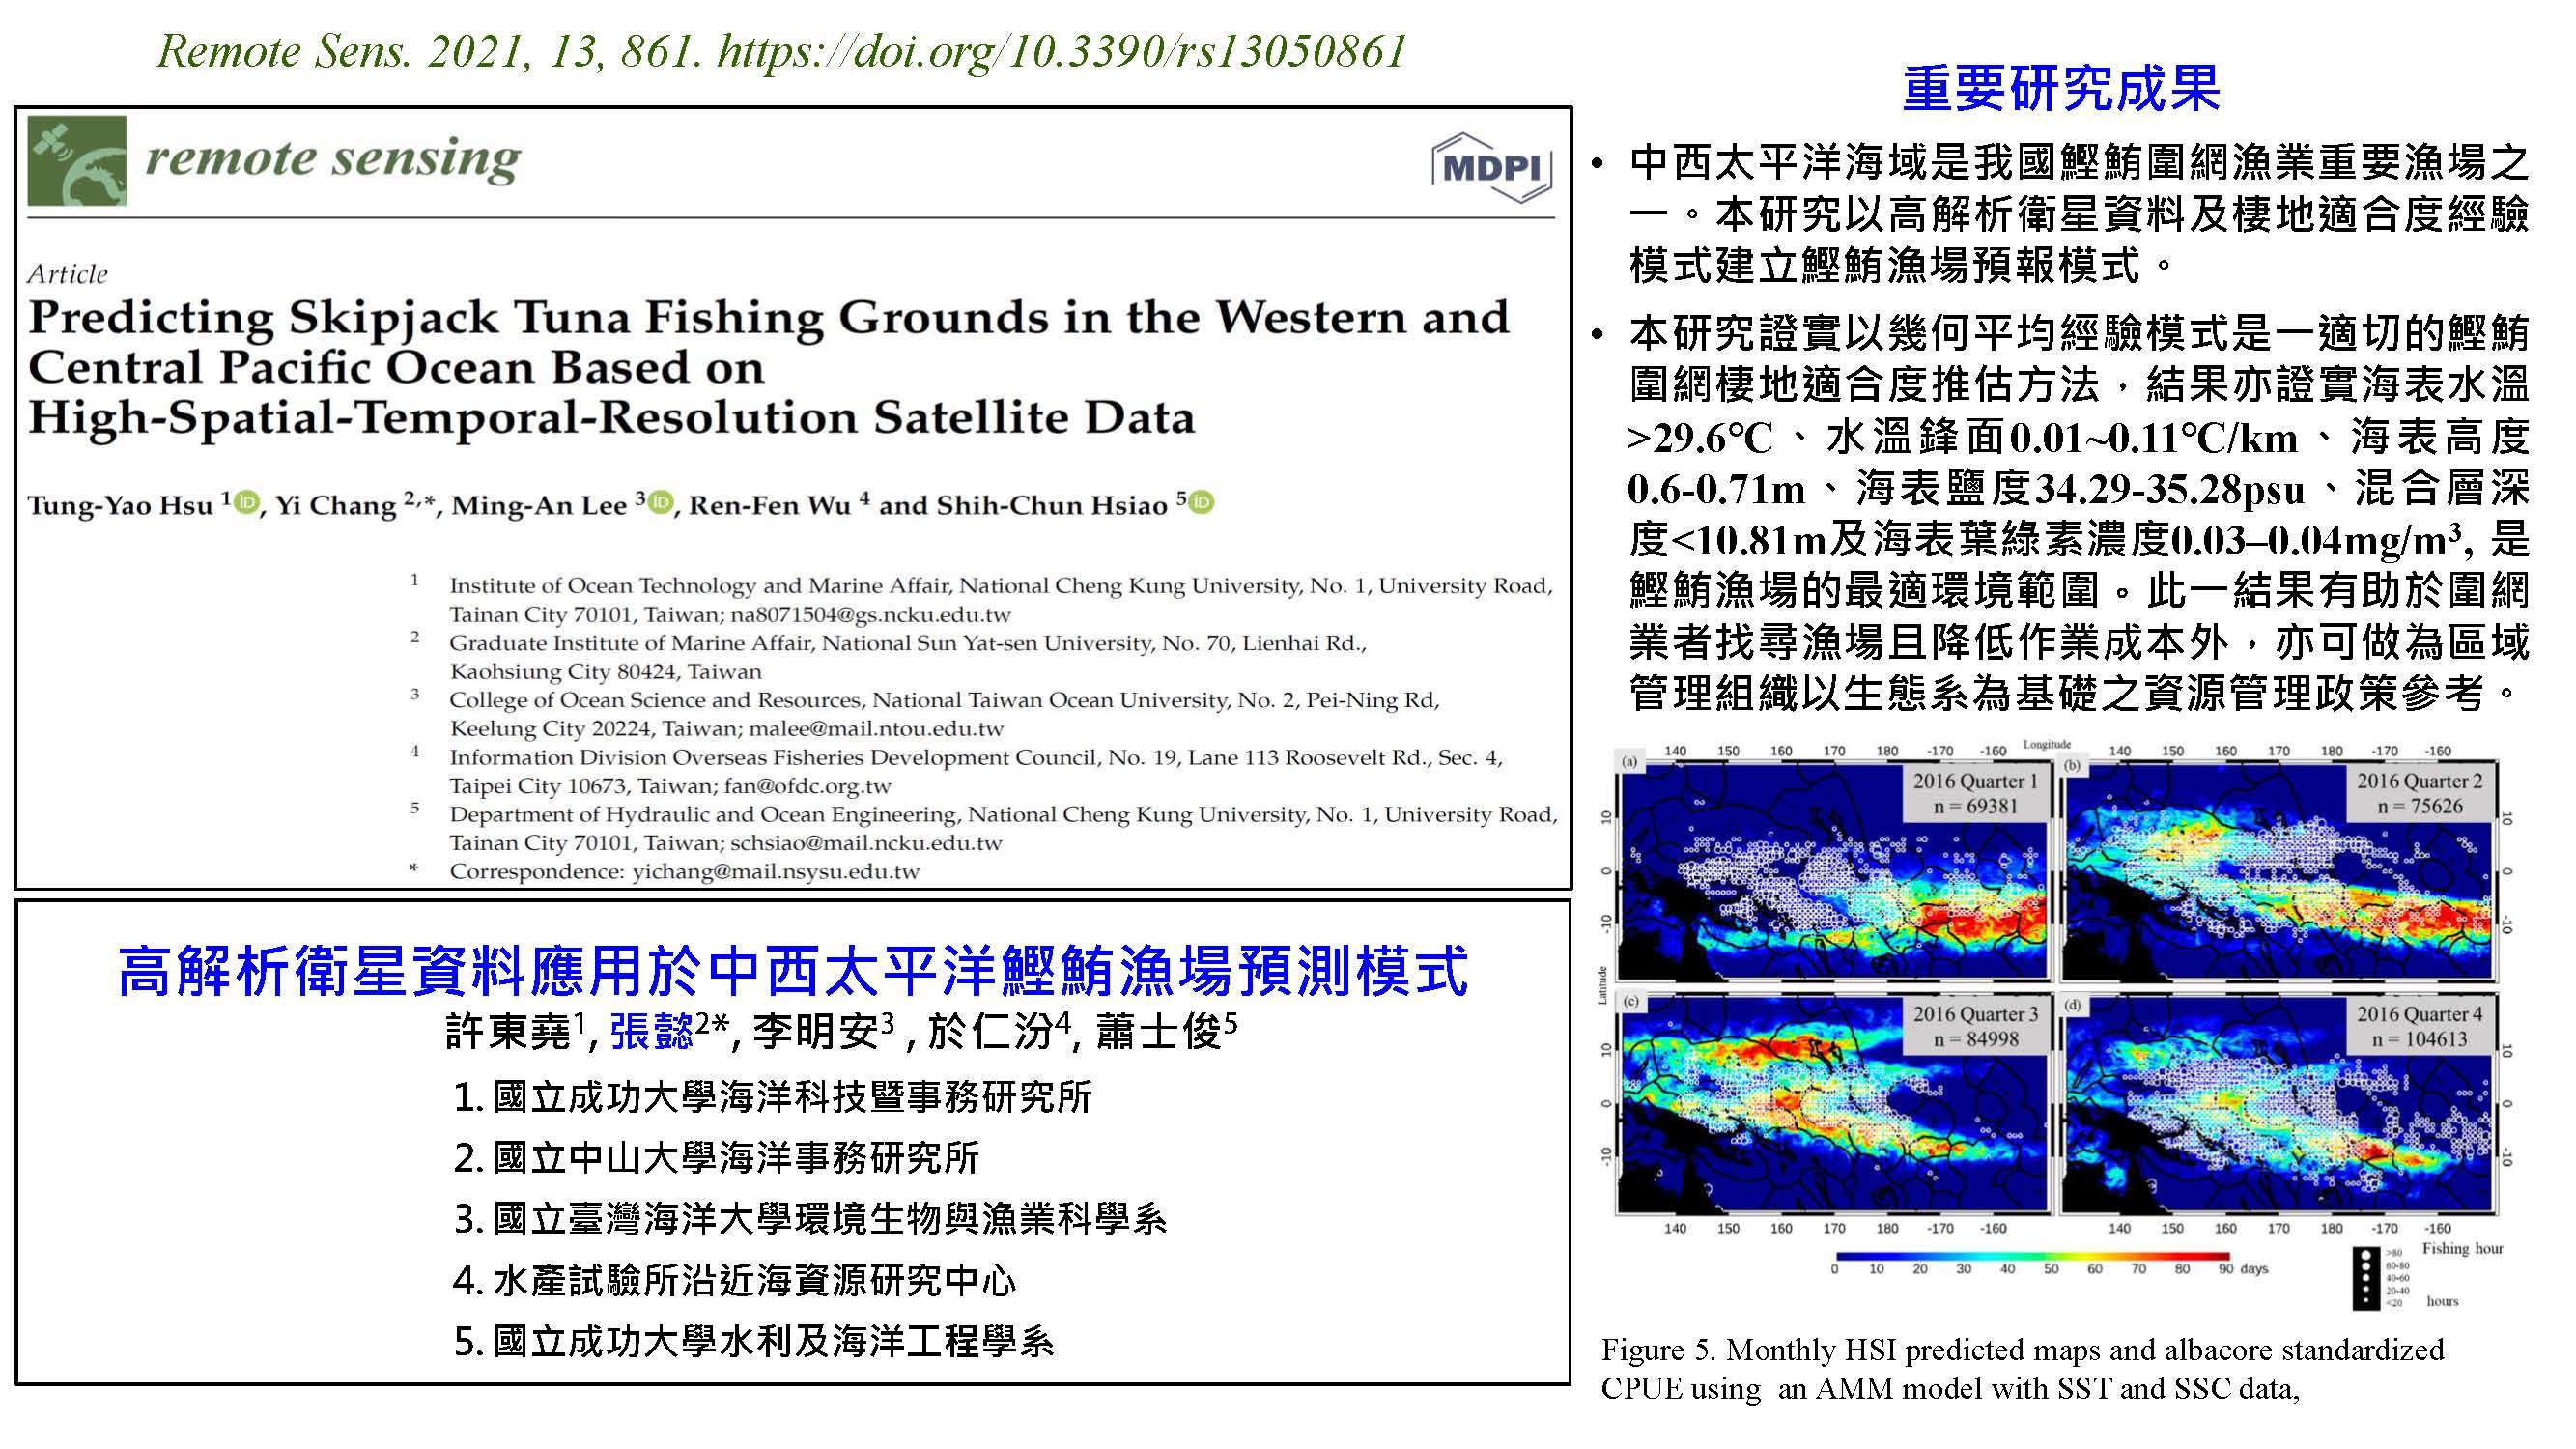 高解析衛星資料應用於中西太平洋鰹鮪漁場預測模式